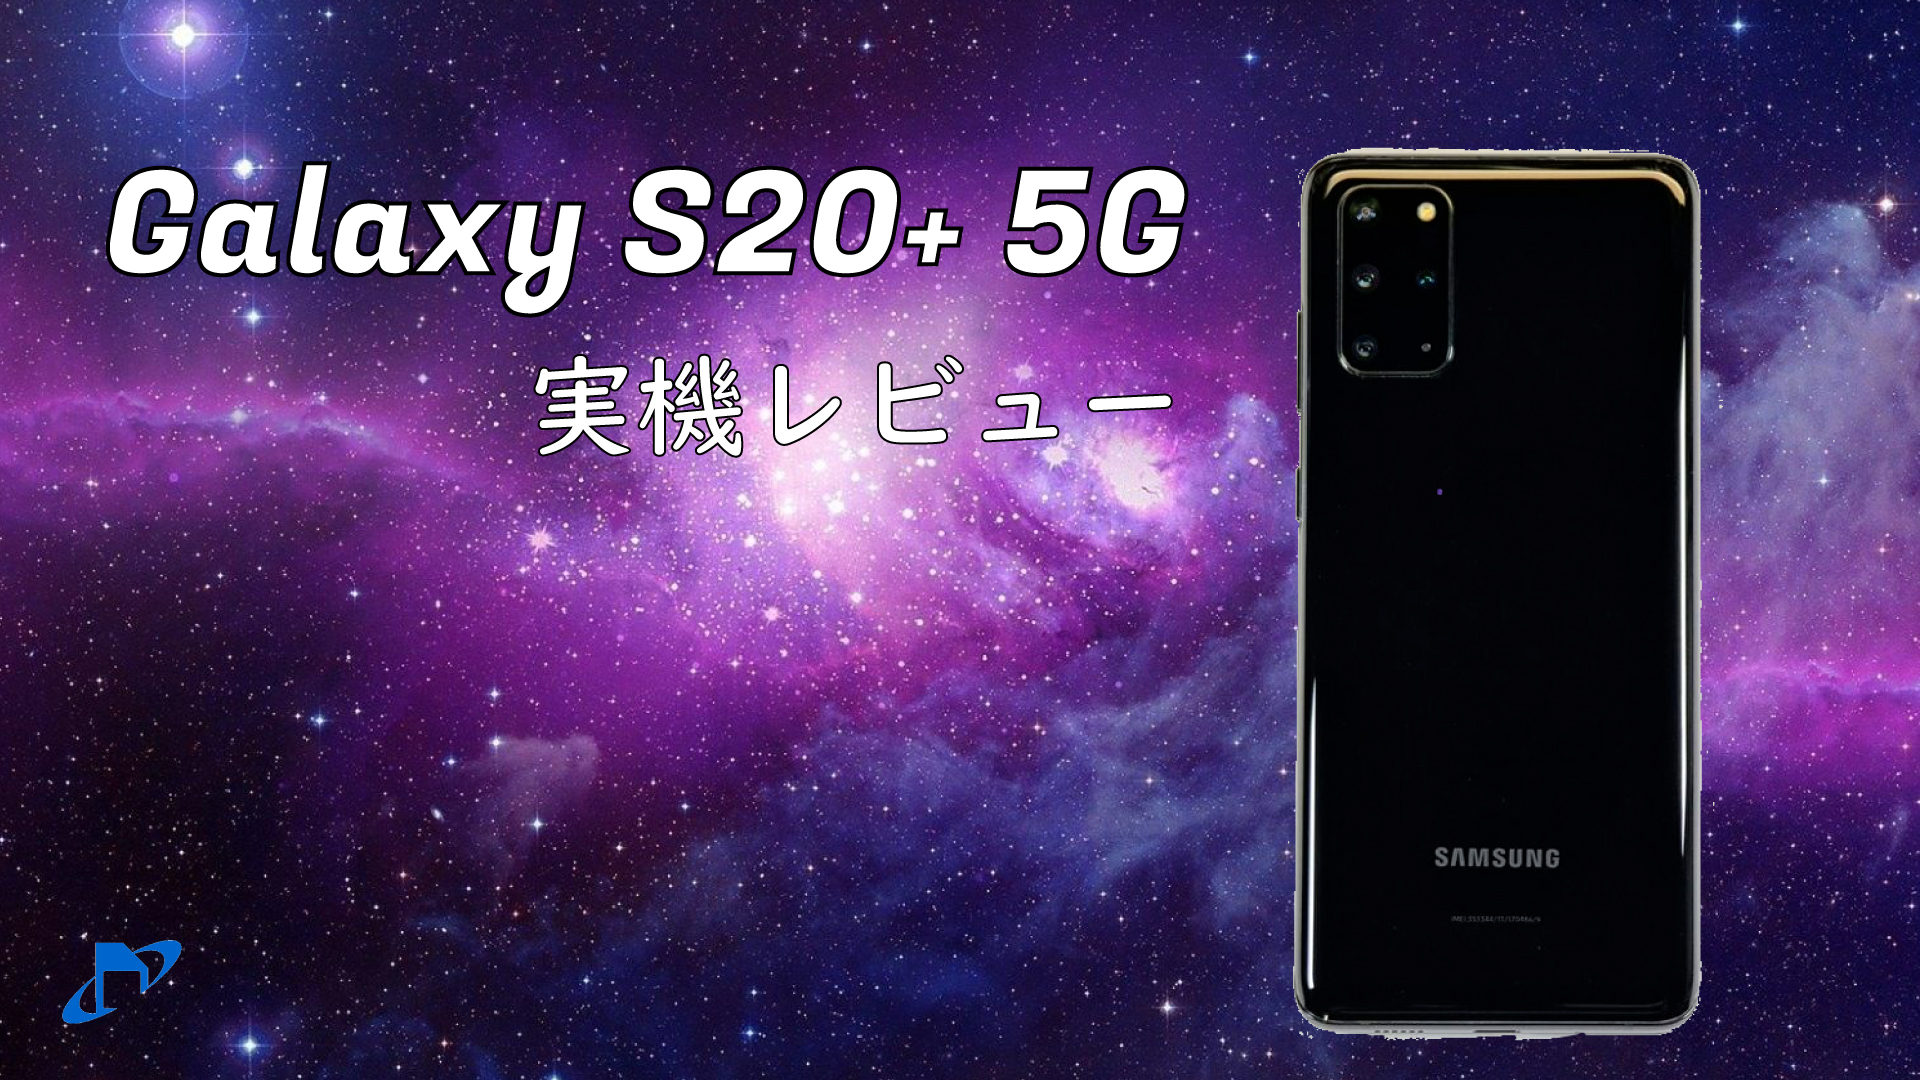 Galaxy S20+ 5G 実機レビュー!高性能なカメラ搭載のハイエンドモデル 